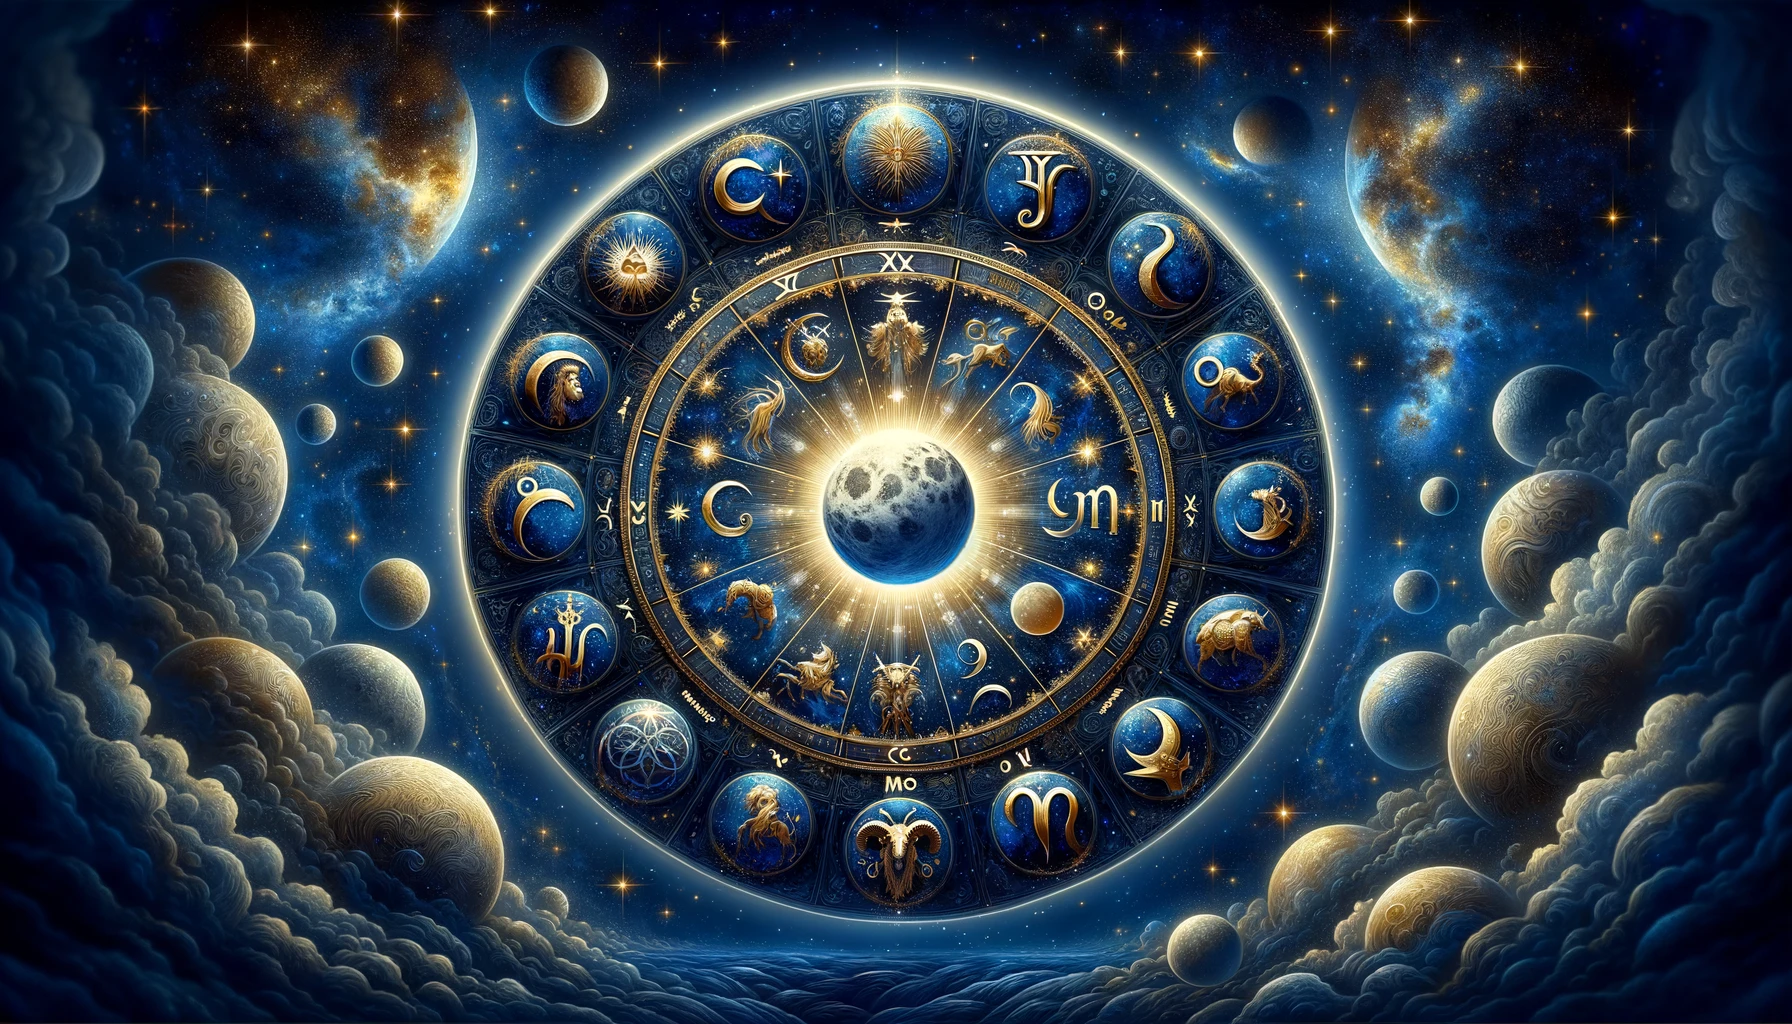 Οι 12 θέσεις της Σελήνης και τι υπόσχεται ότι θα συμβεί στη ζωή μας. 1